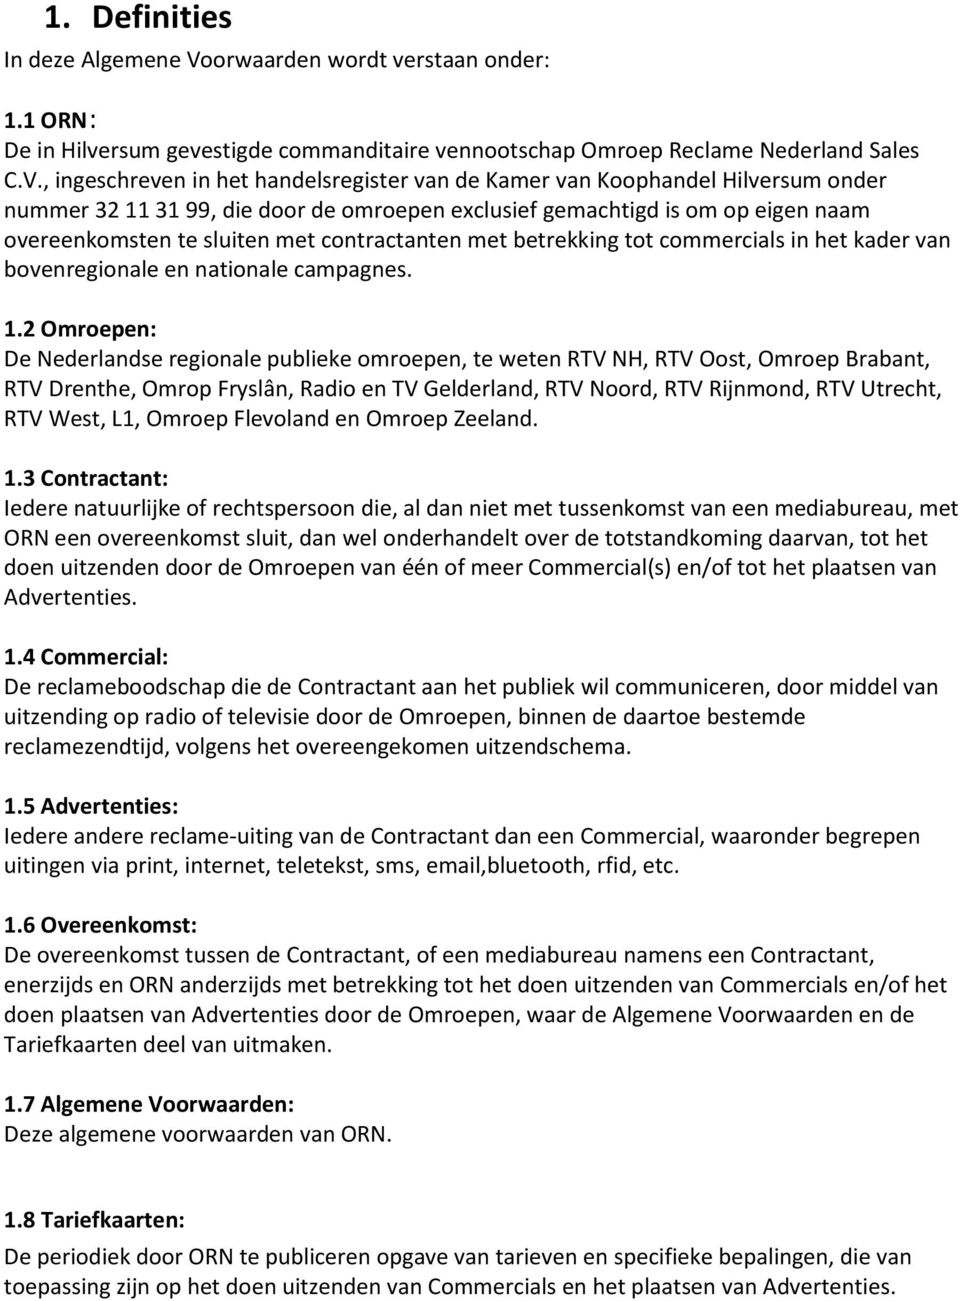 , ingeschreven in het handelsregister van de Kamer van Koophandel Hilversum onder nummer 32 11 31 99, die door de omroepen exclusief gemachtigd is om op eigen naam overeenkomsten te sluiten met